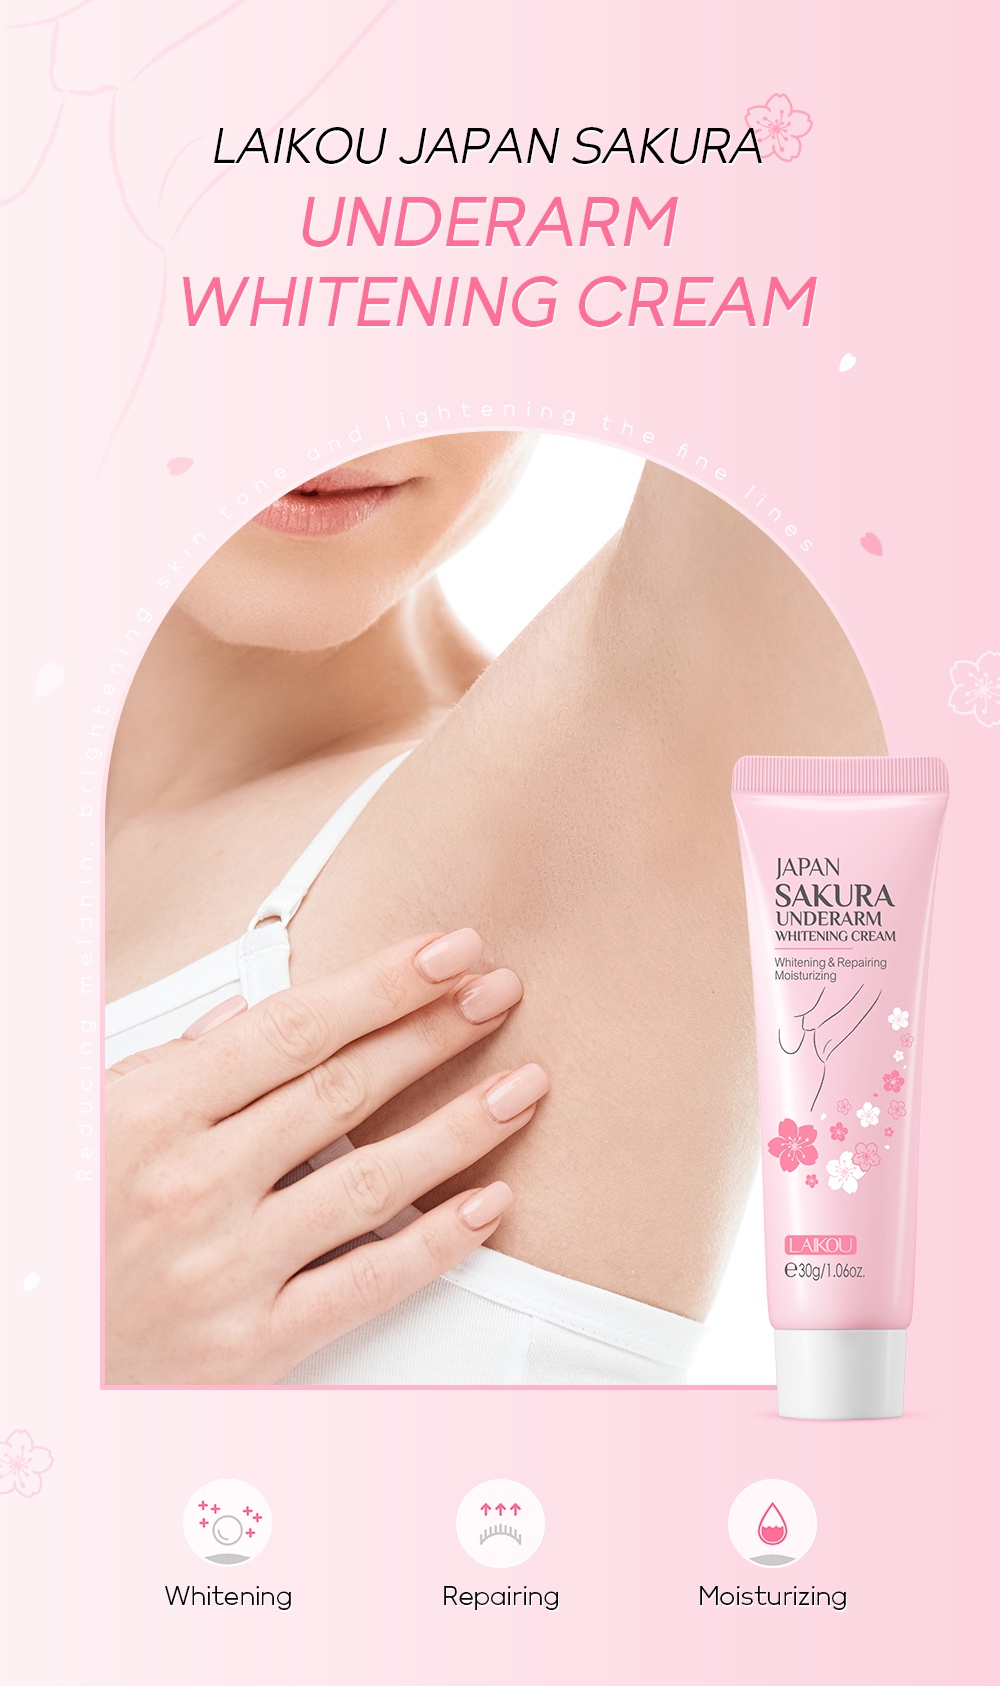 LAIKOU Japan Sakura Underarm Whitening Cream 30gm co 11134202 7qukw leqsoucqbczf0f